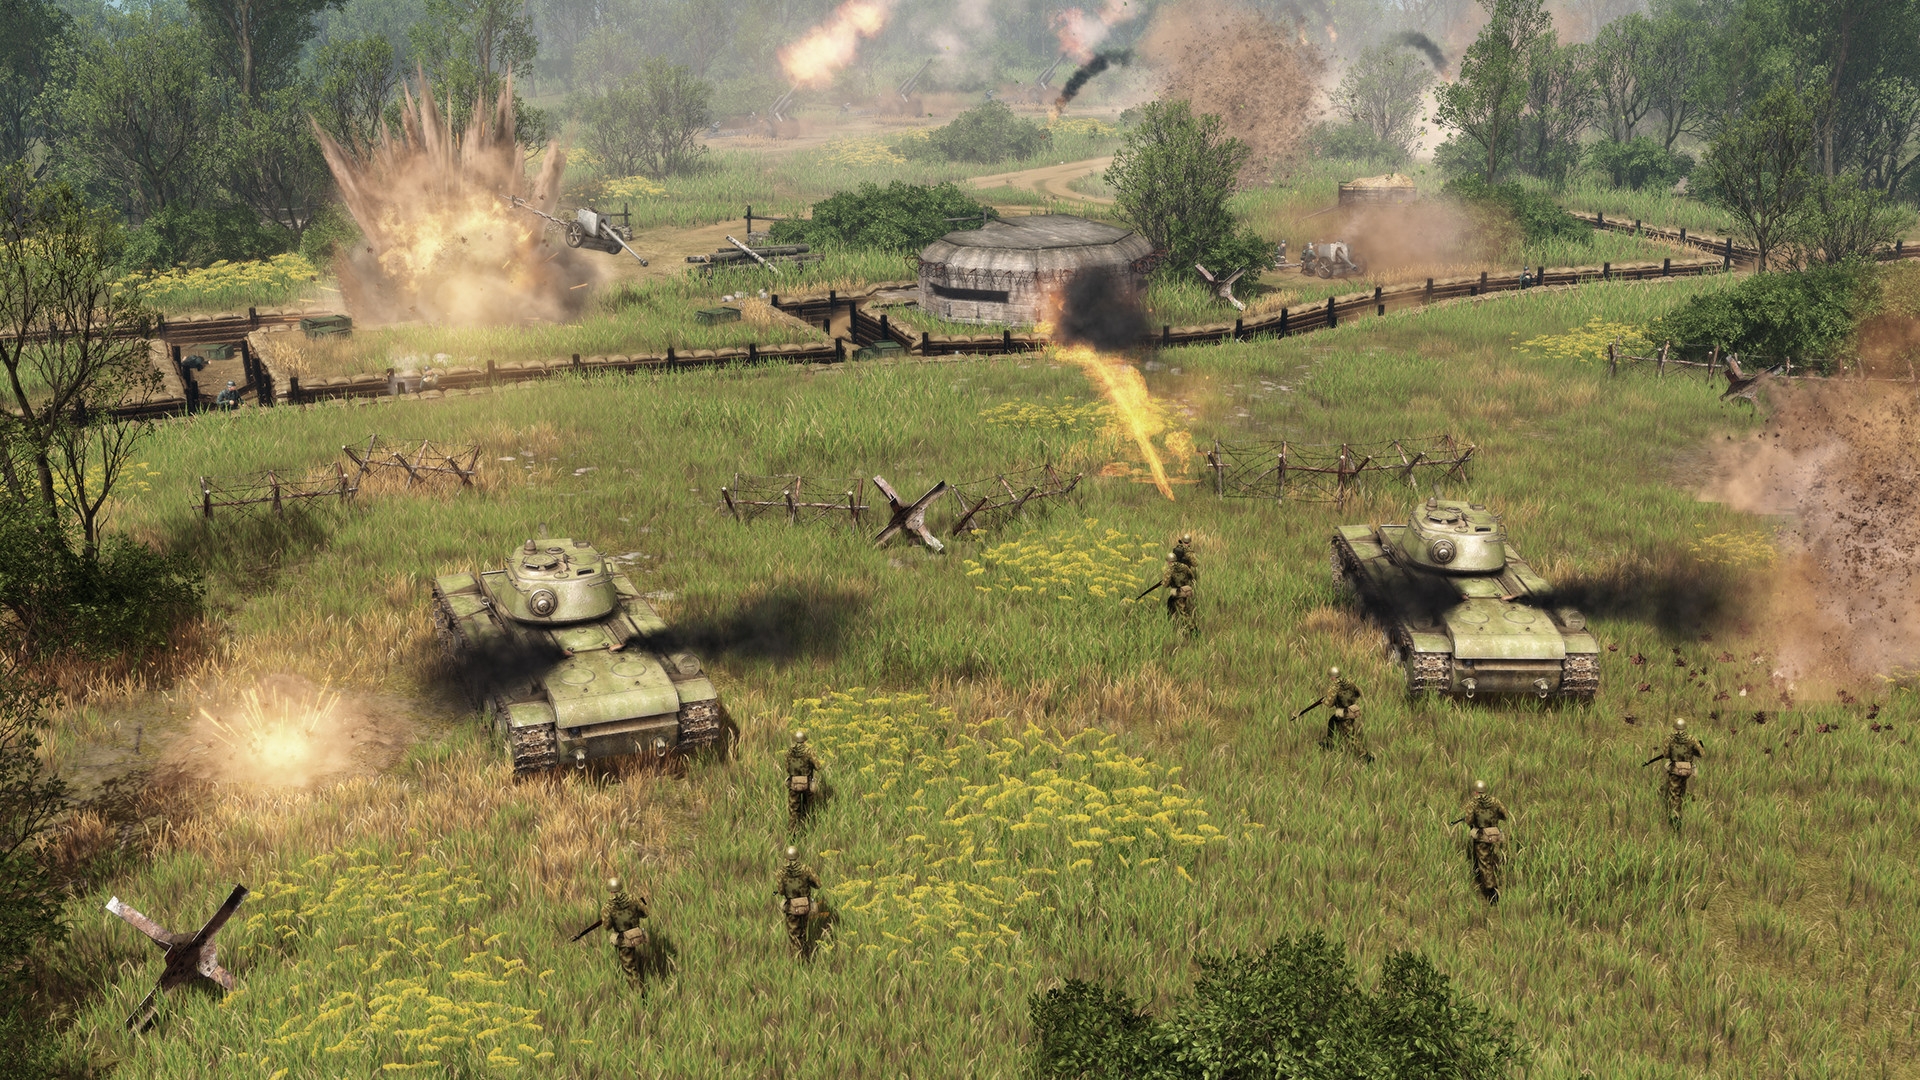 Call of War: World War 2 en Steam